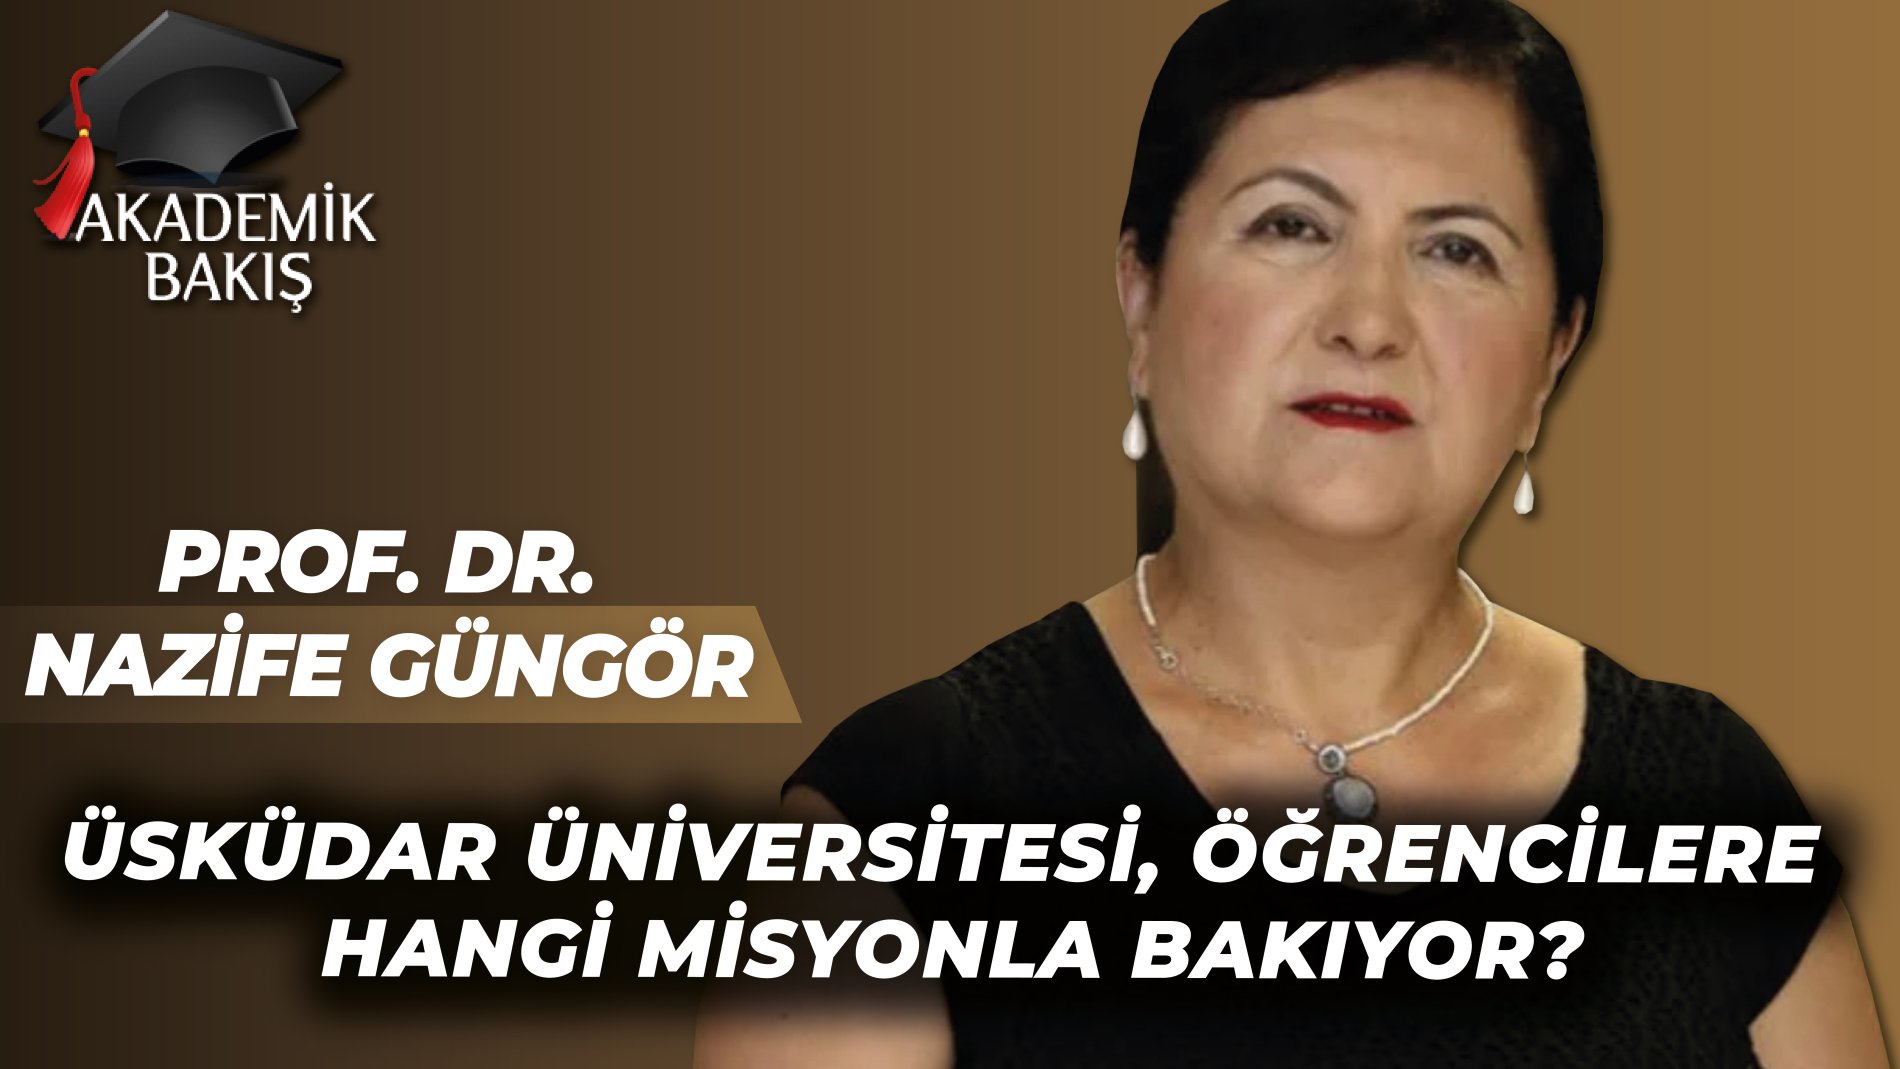 Prof. Dr. Nazife Güngör: Üsküdar Üniversitesinin Bilim Yönü Çok Güçlü